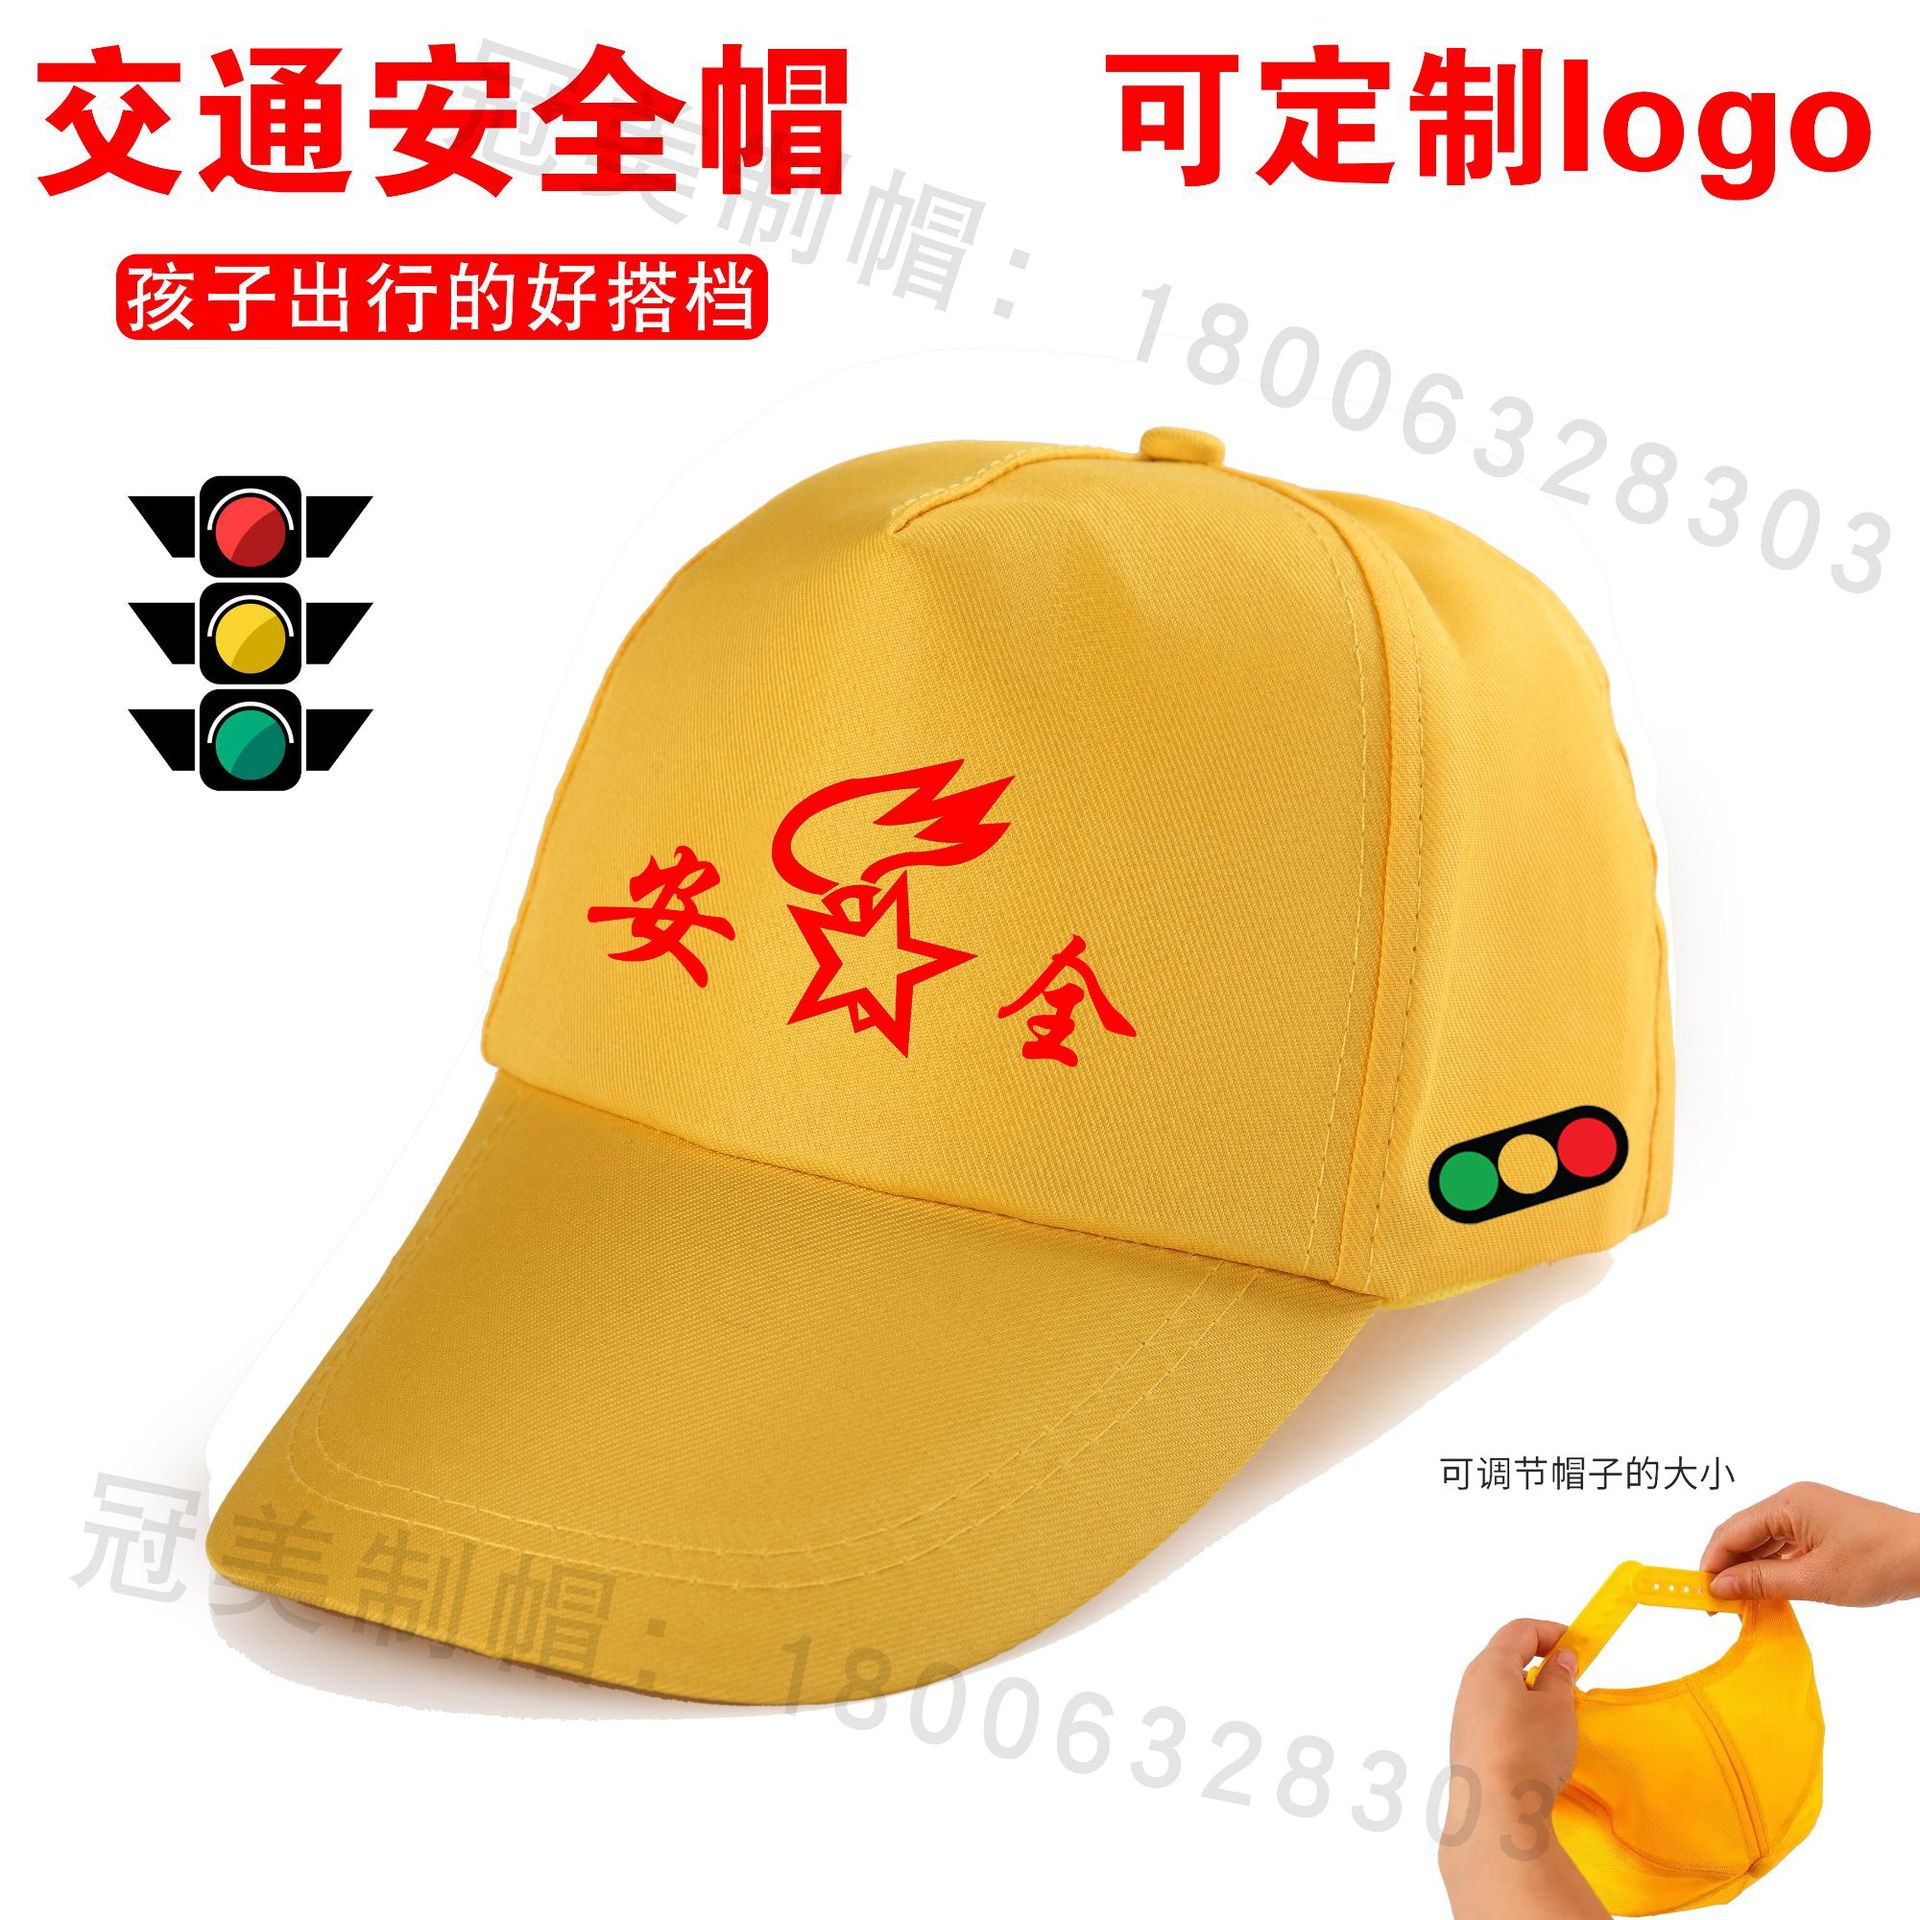 幼儿园小黄帽小学生交通安全帽过马路红绿灯安全帽厂家印logo印字